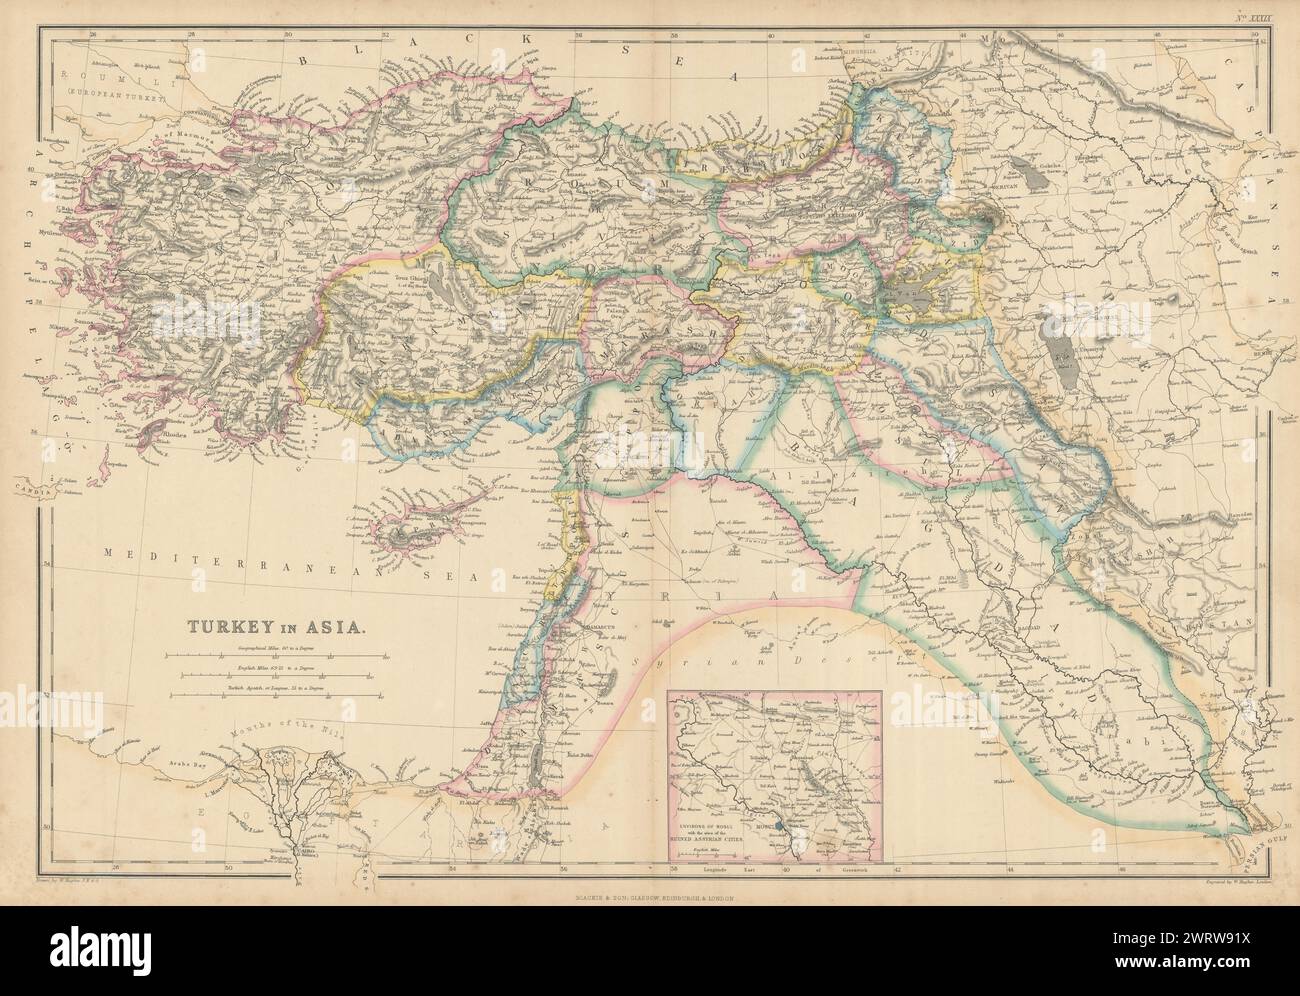 Türkei in Asien. Mossul Assyrische Städte. Koordistan/Kurdistan. HUGHES 1860 Karte Stockfoto